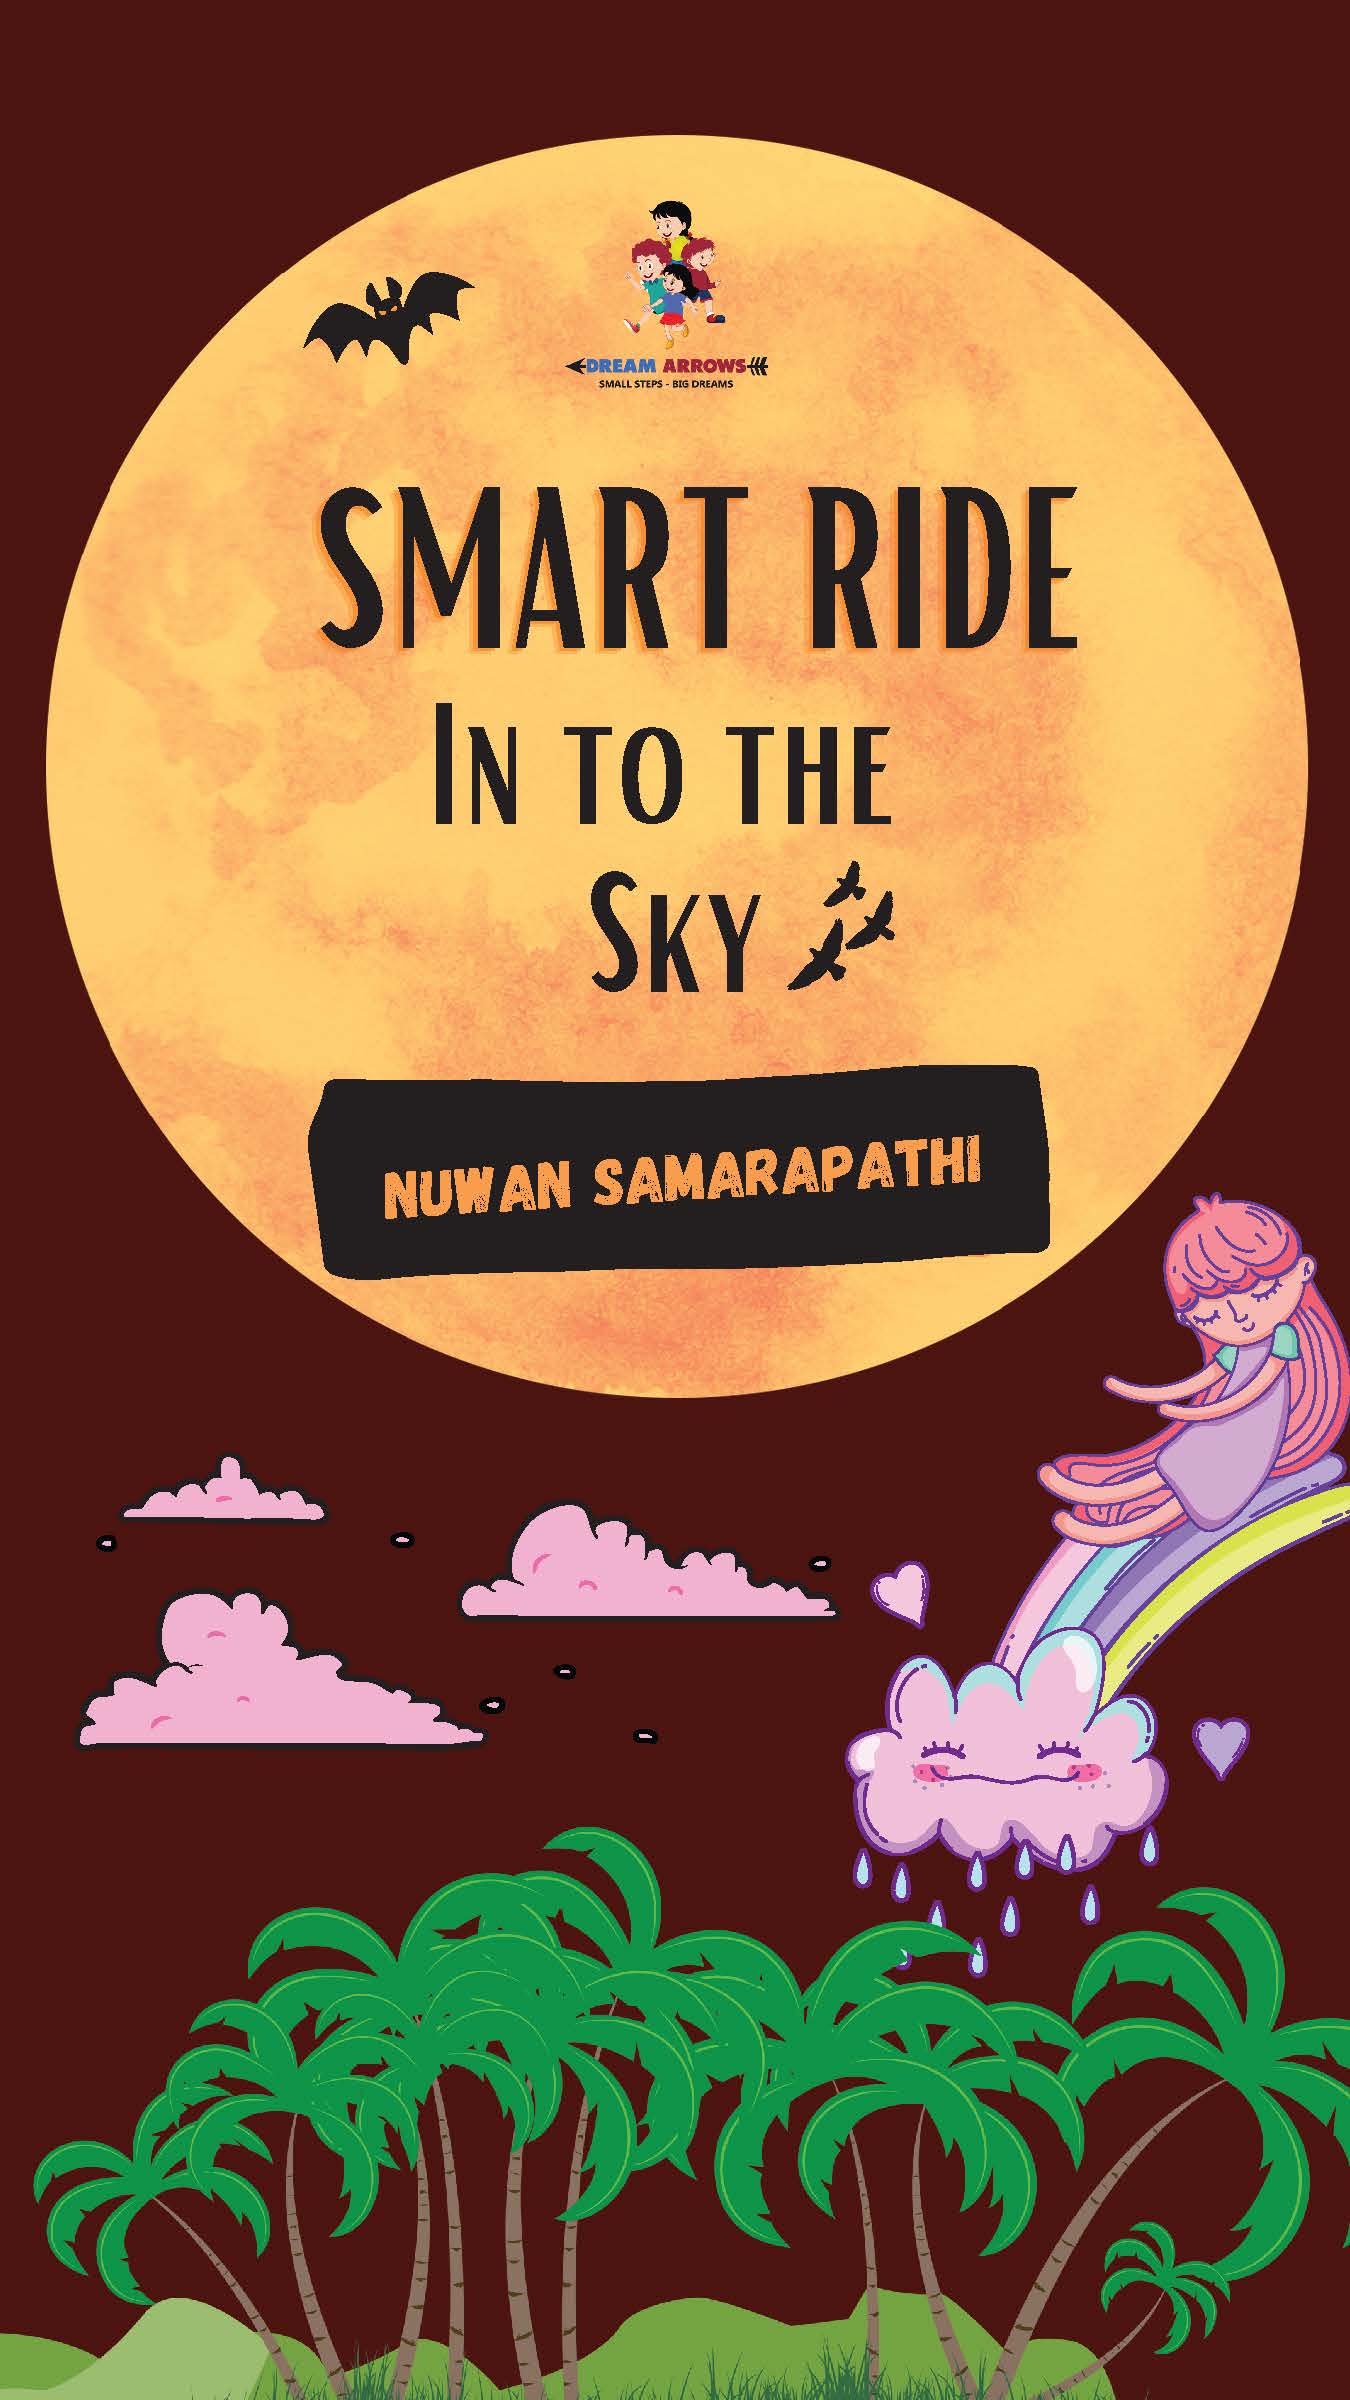 Smart ride into the sky